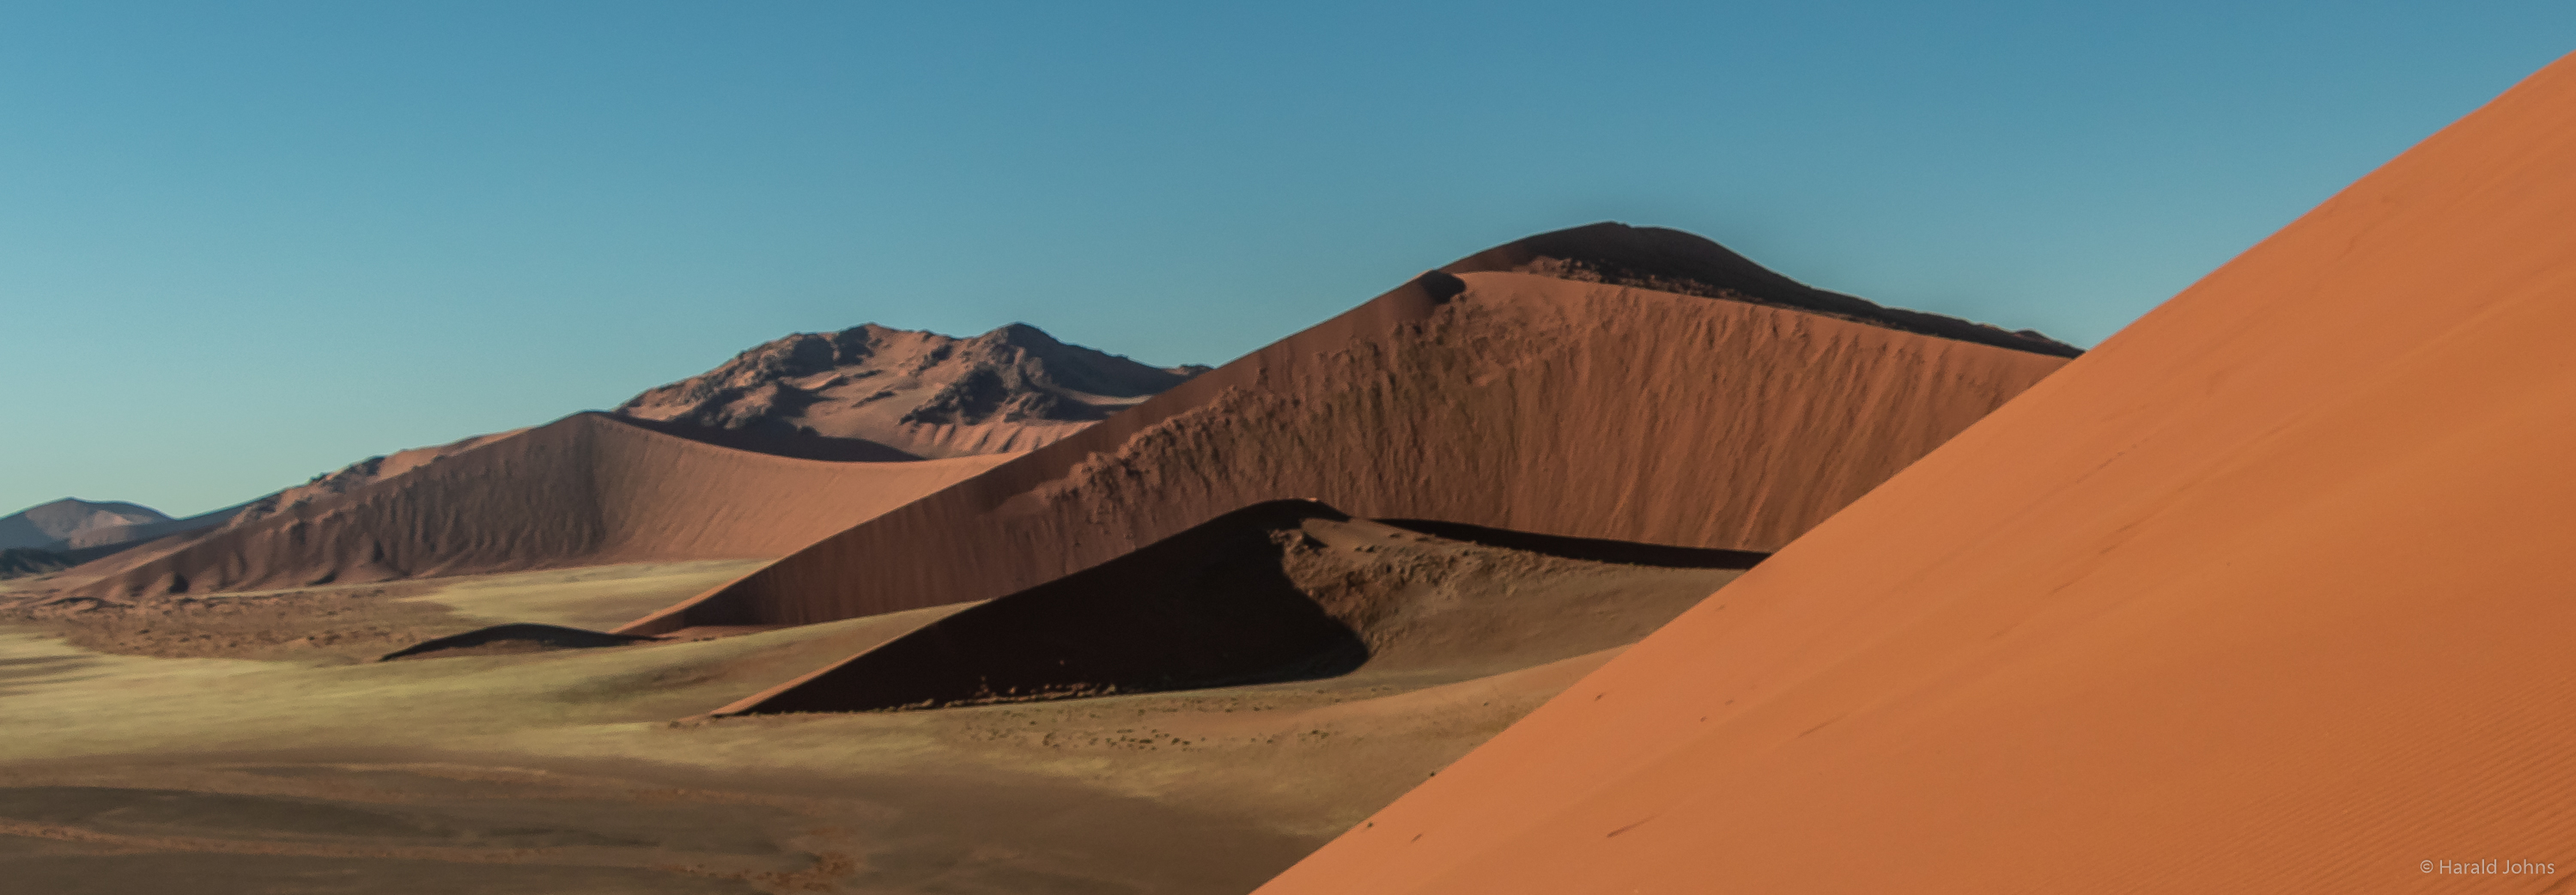 Rost in seiner schönsten Form - Eisenoxid färbt die Sandkörner der Dünen rot ein.